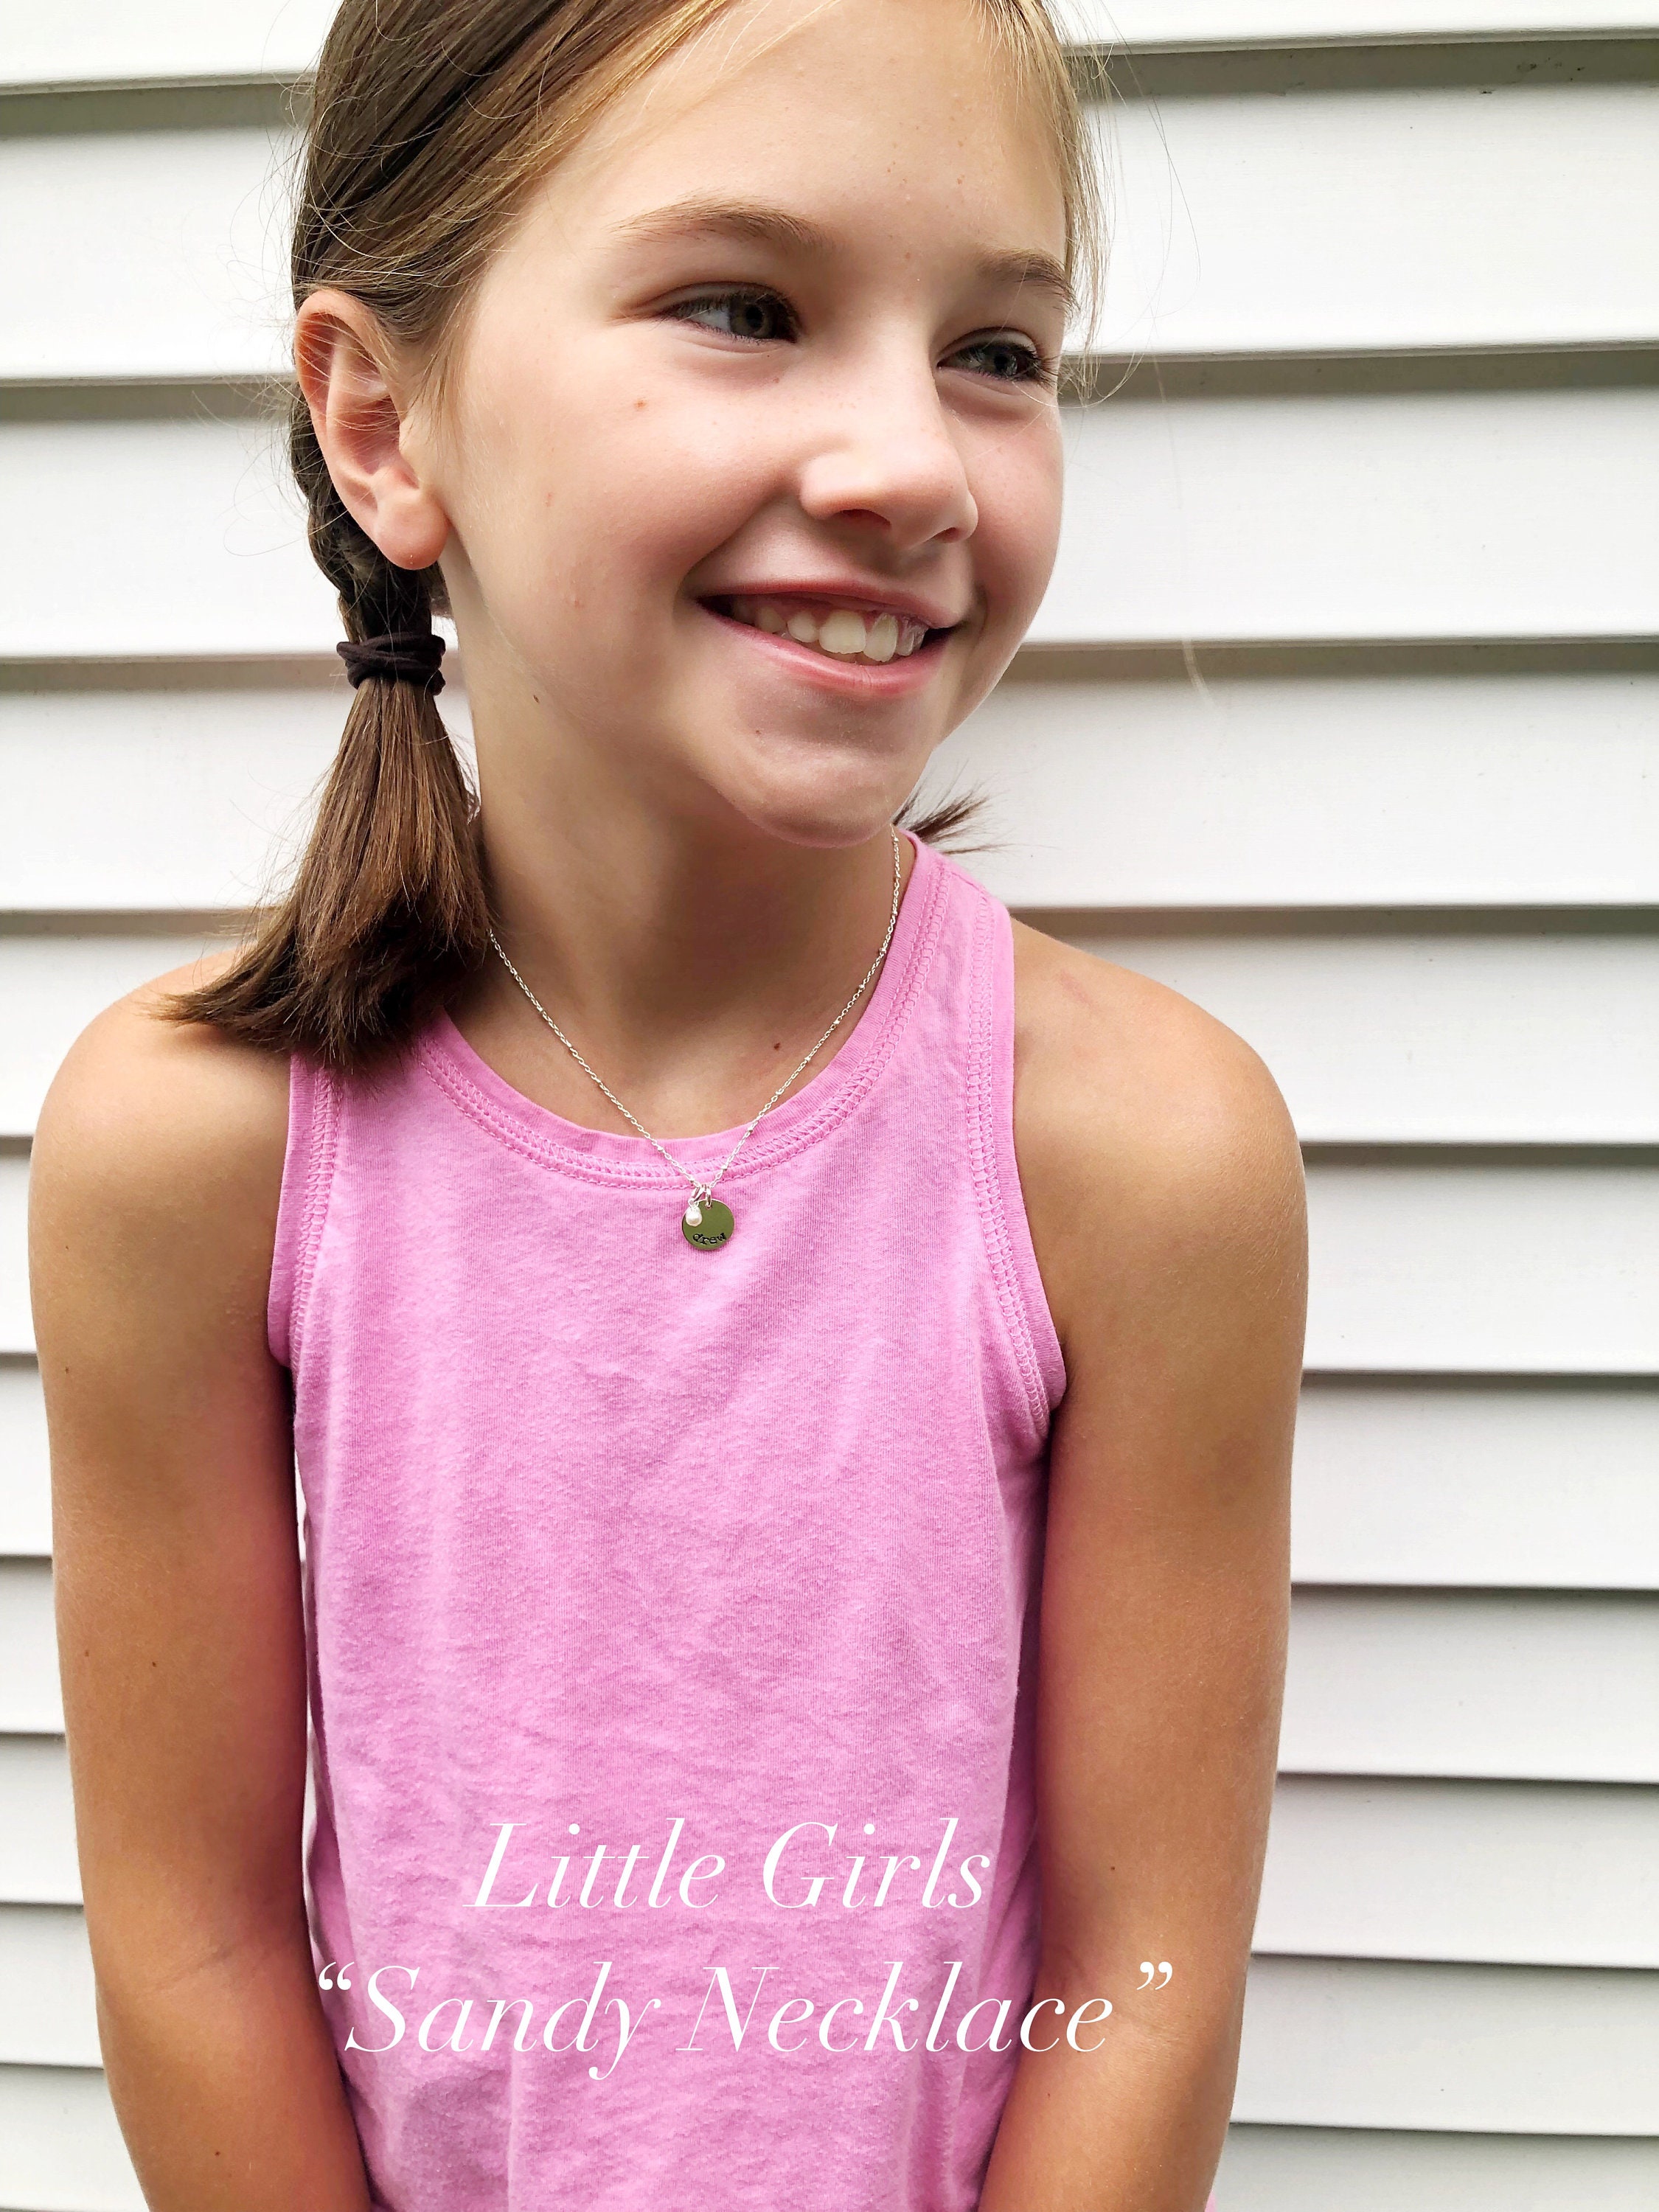 Little Girls Jewelry Little Girl Necklace Little Girls | Etsy